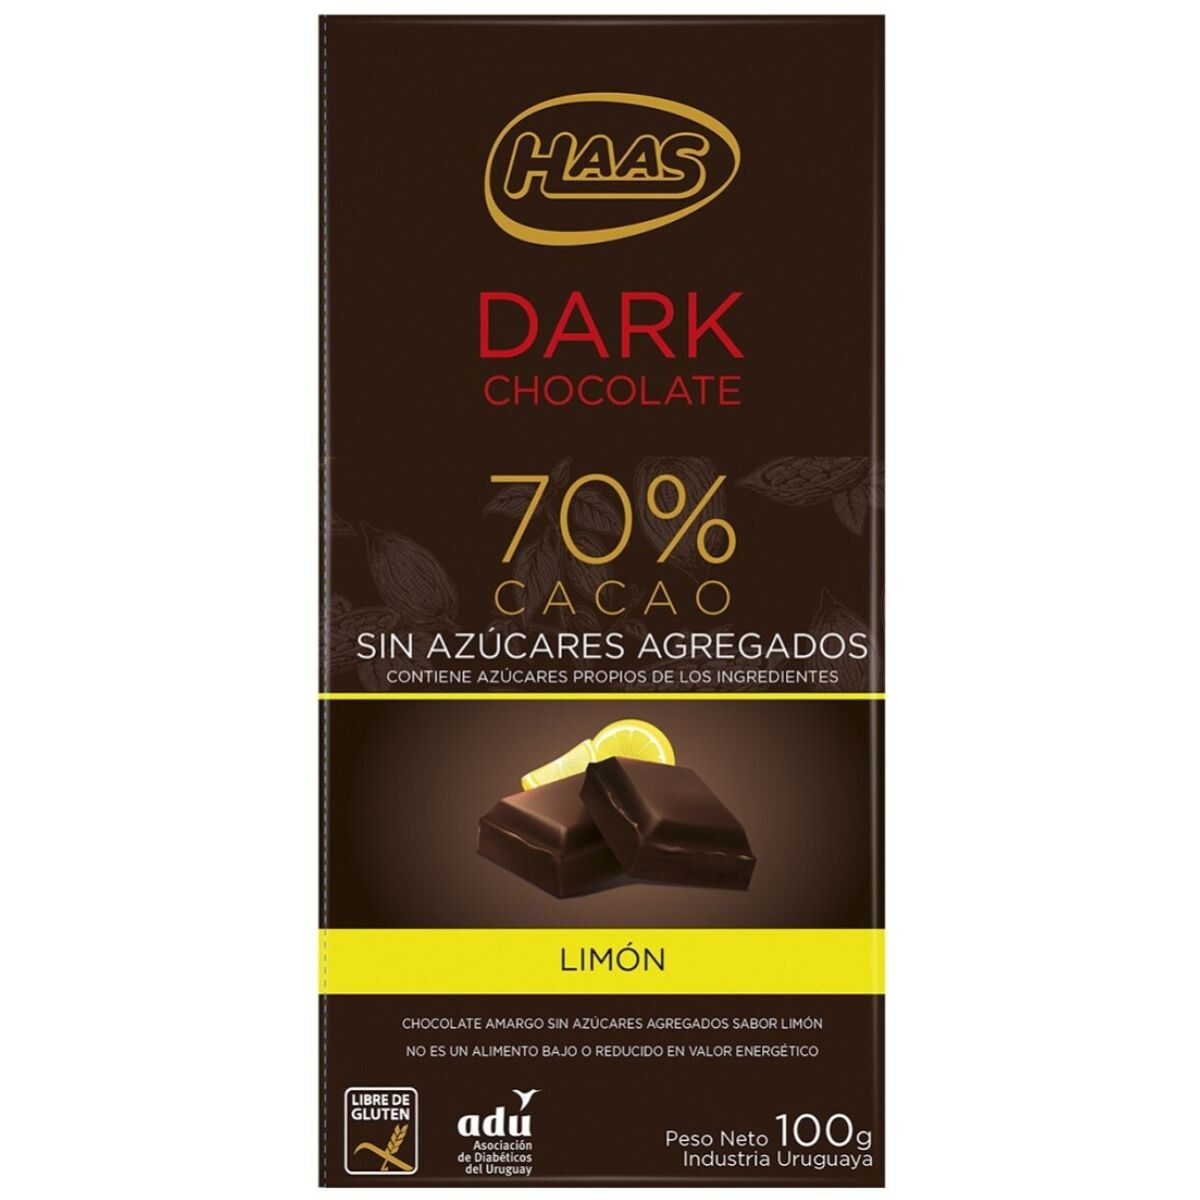 Tableta de Chocolate HAAS Dark 70% Cacao Sin Azúcar Amargo con Limón 100 GR 